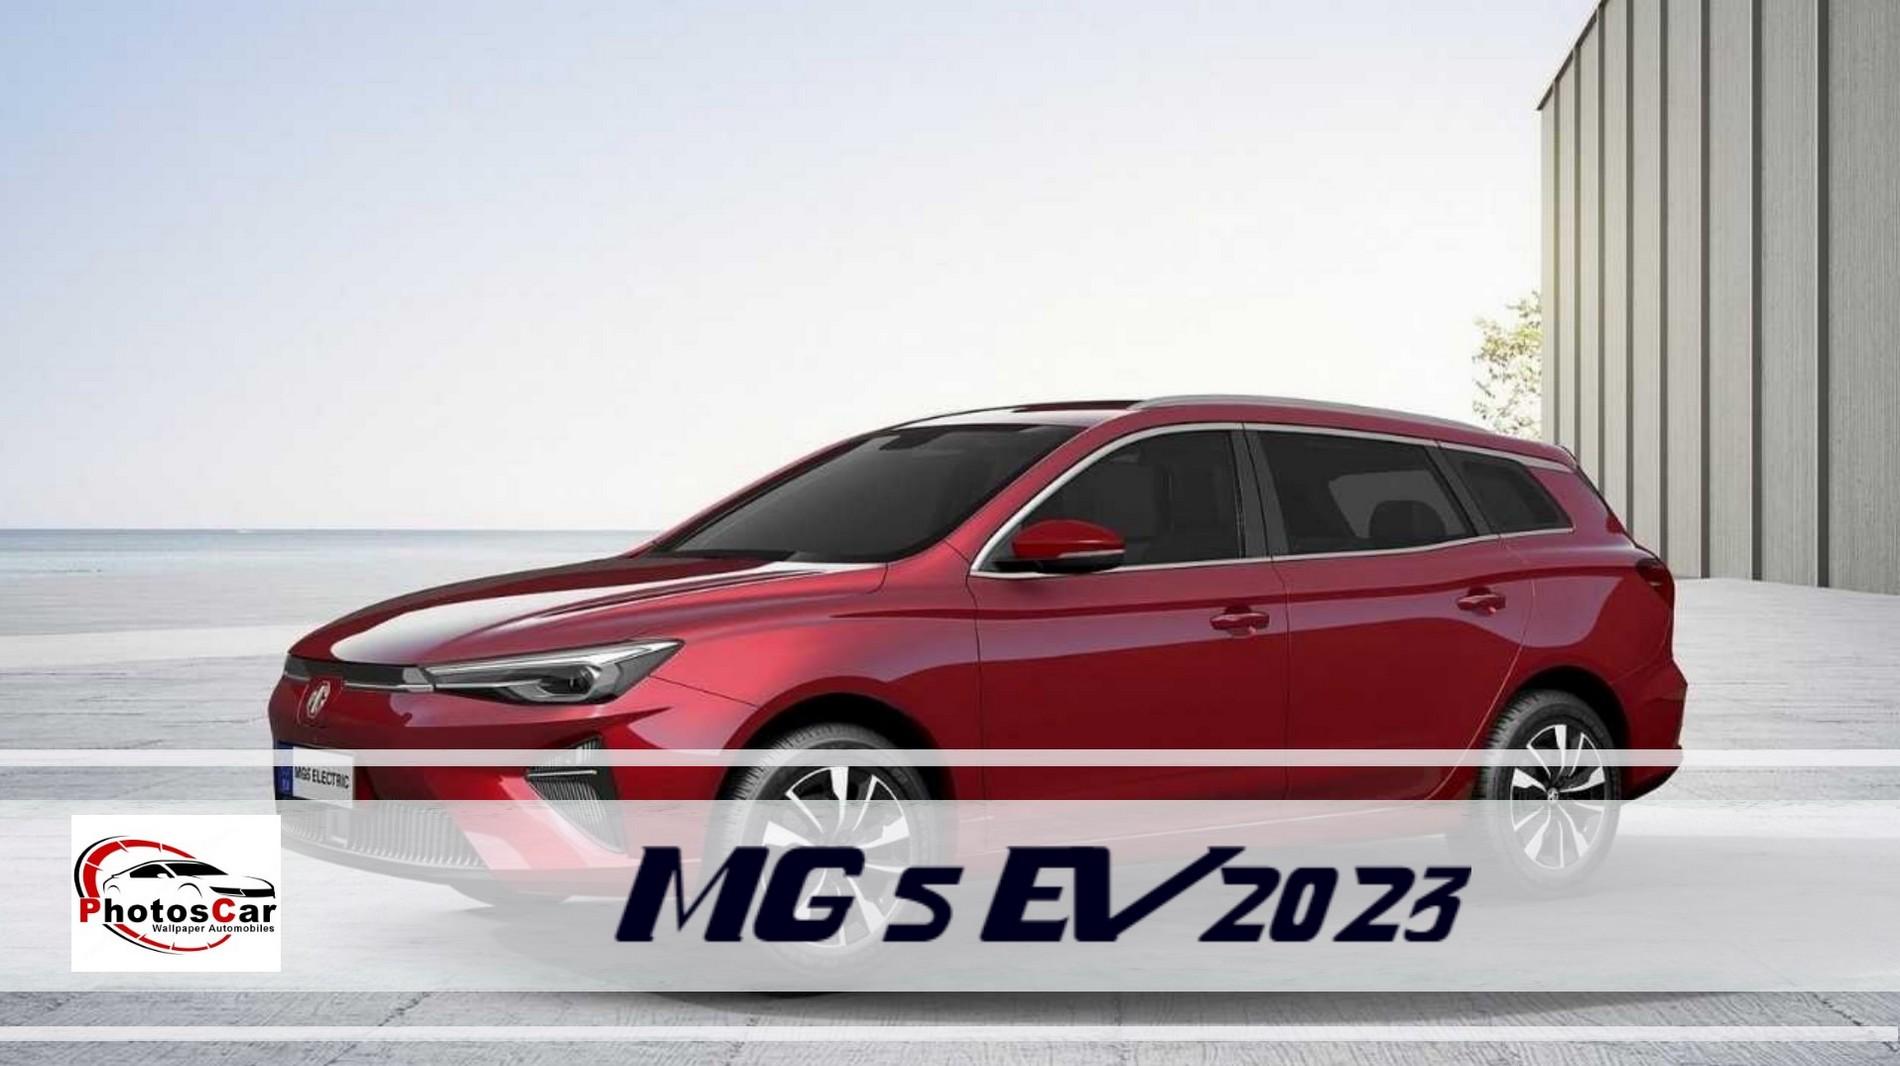 MG 5 EV 2023